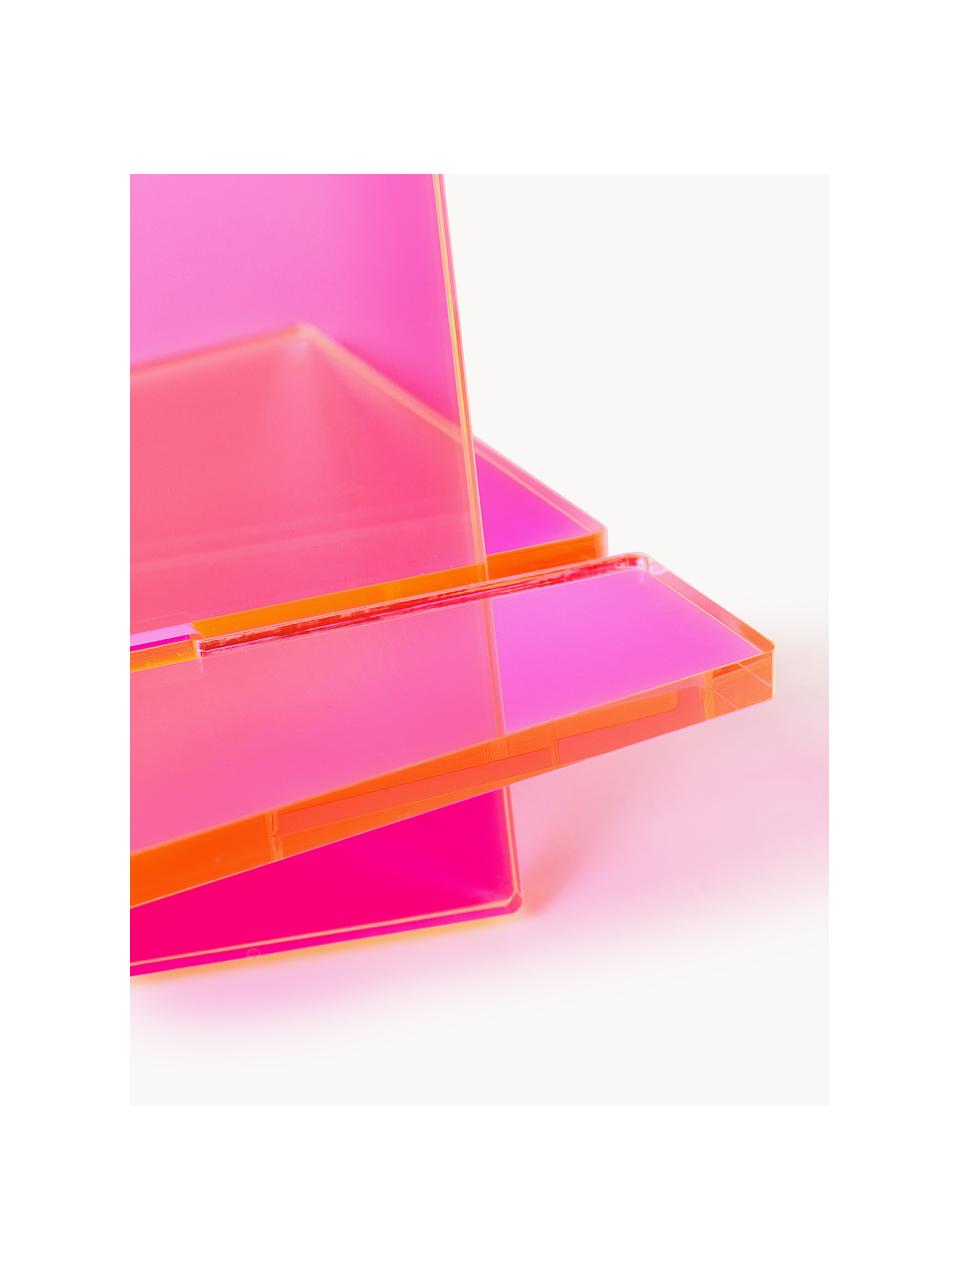 Stojak na książki Crystal, S 27 x W 25 cm, Szkło akrylowe, Różowy, półtransparentny, S 27 x W 25 cm